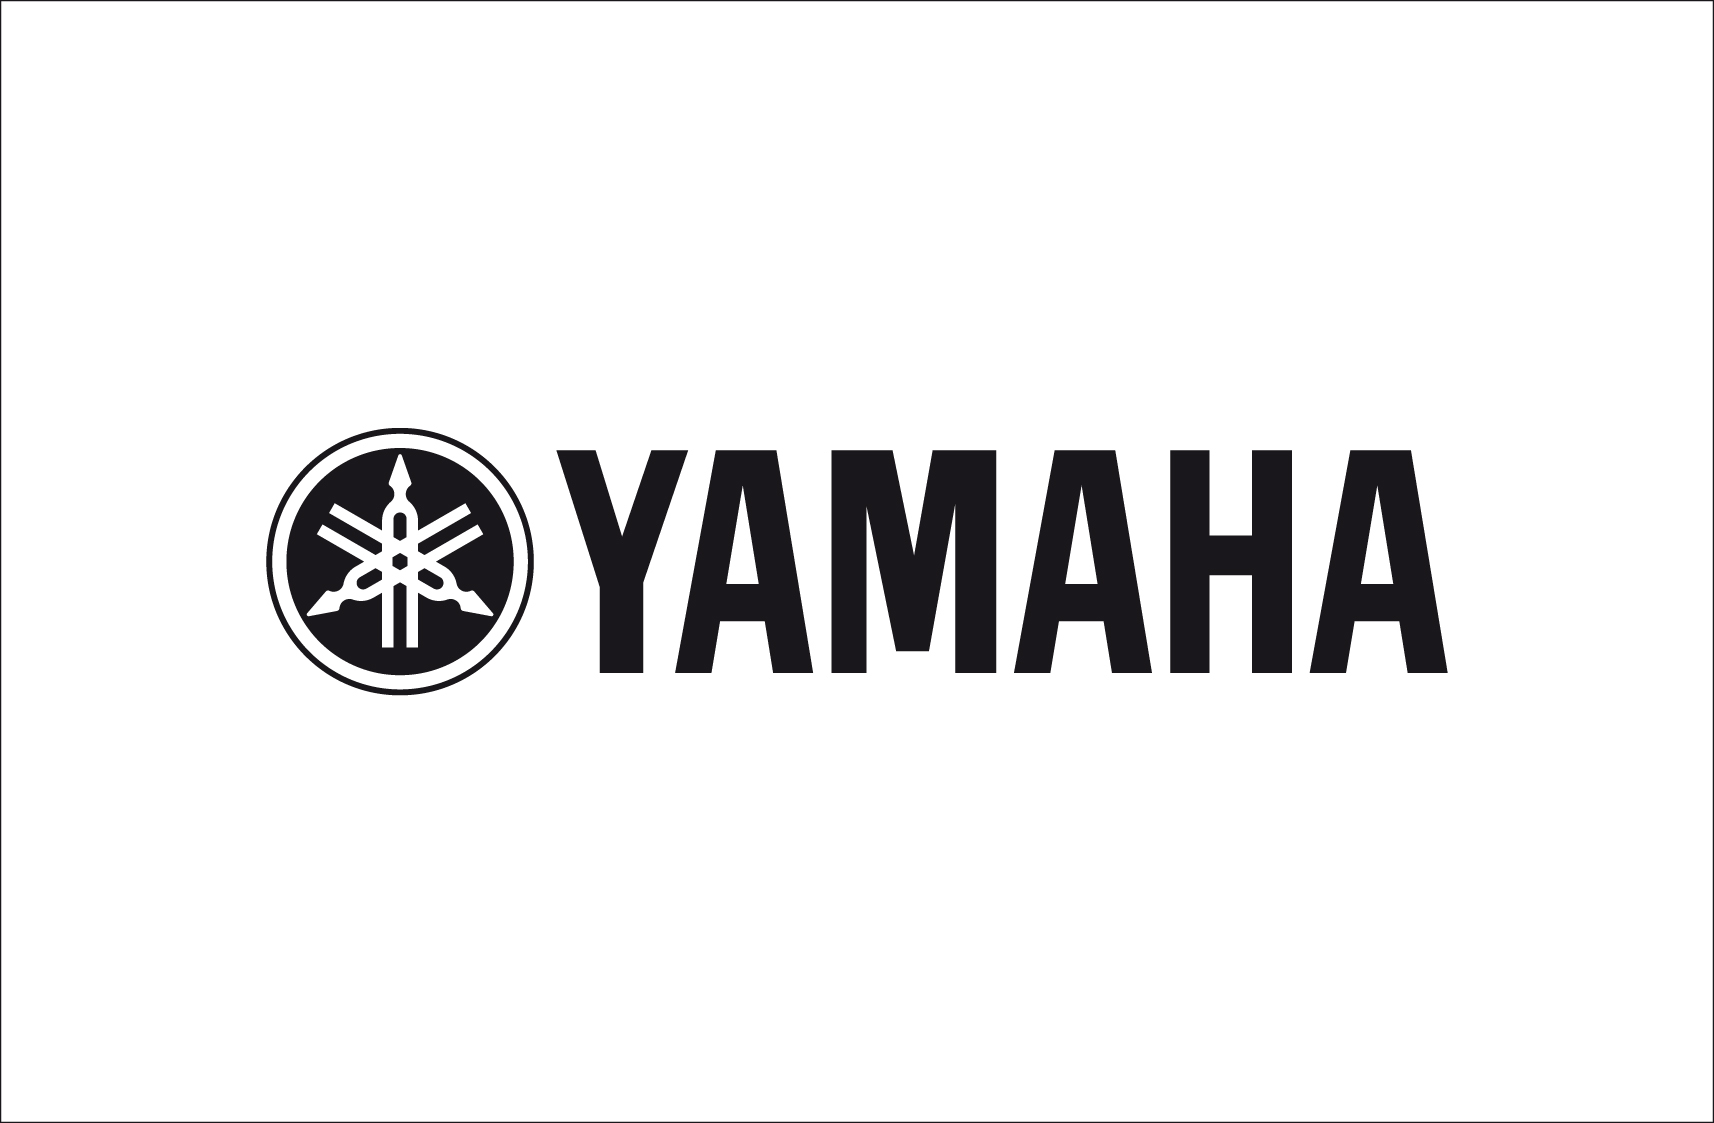 YAMAHA - FC 3A Pédale sustain type Piano avec effet demi-pédale